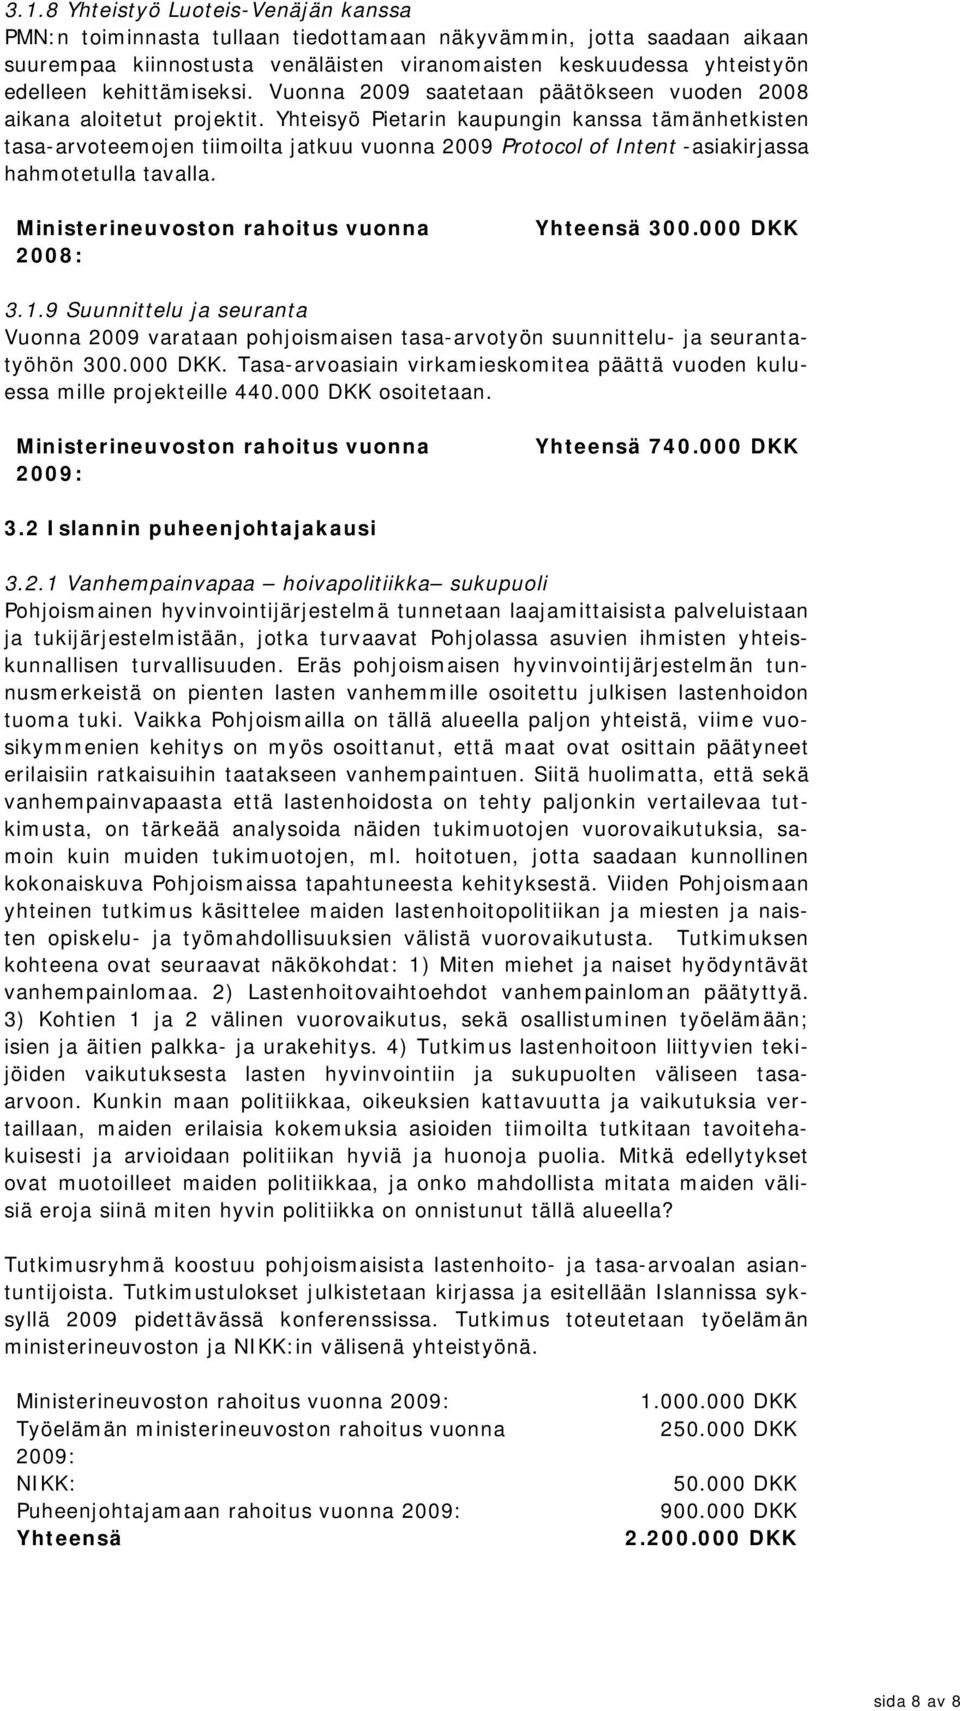 Yhteisyö Pietarin kaupungin kanssa tämänhetkisten tasa-arvoteemojen tiimoilta jatkuu vuonna 2009 Protocol of Intent -asiakirjassa hahmotetulla tavalla. 2008: 300.000 DKK 3.1.